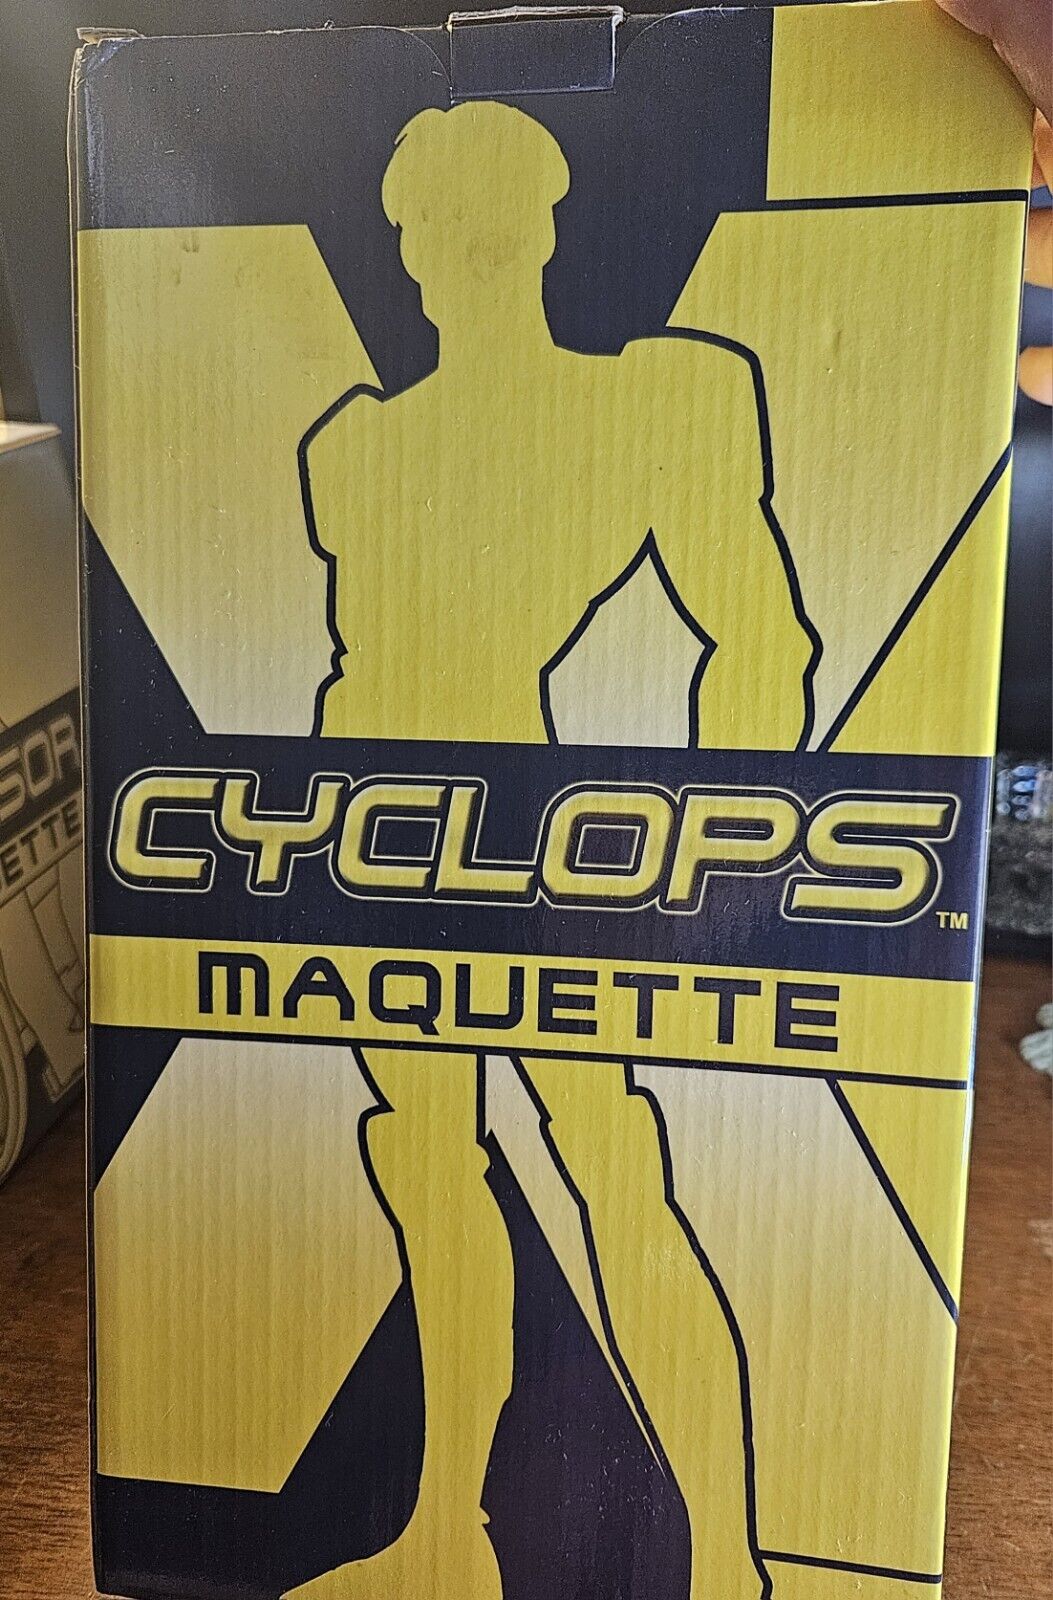 RARE 2002 X-Men Evolution Cyclops maquette - #2130 of 2500.  BRAND NEW IN BOX